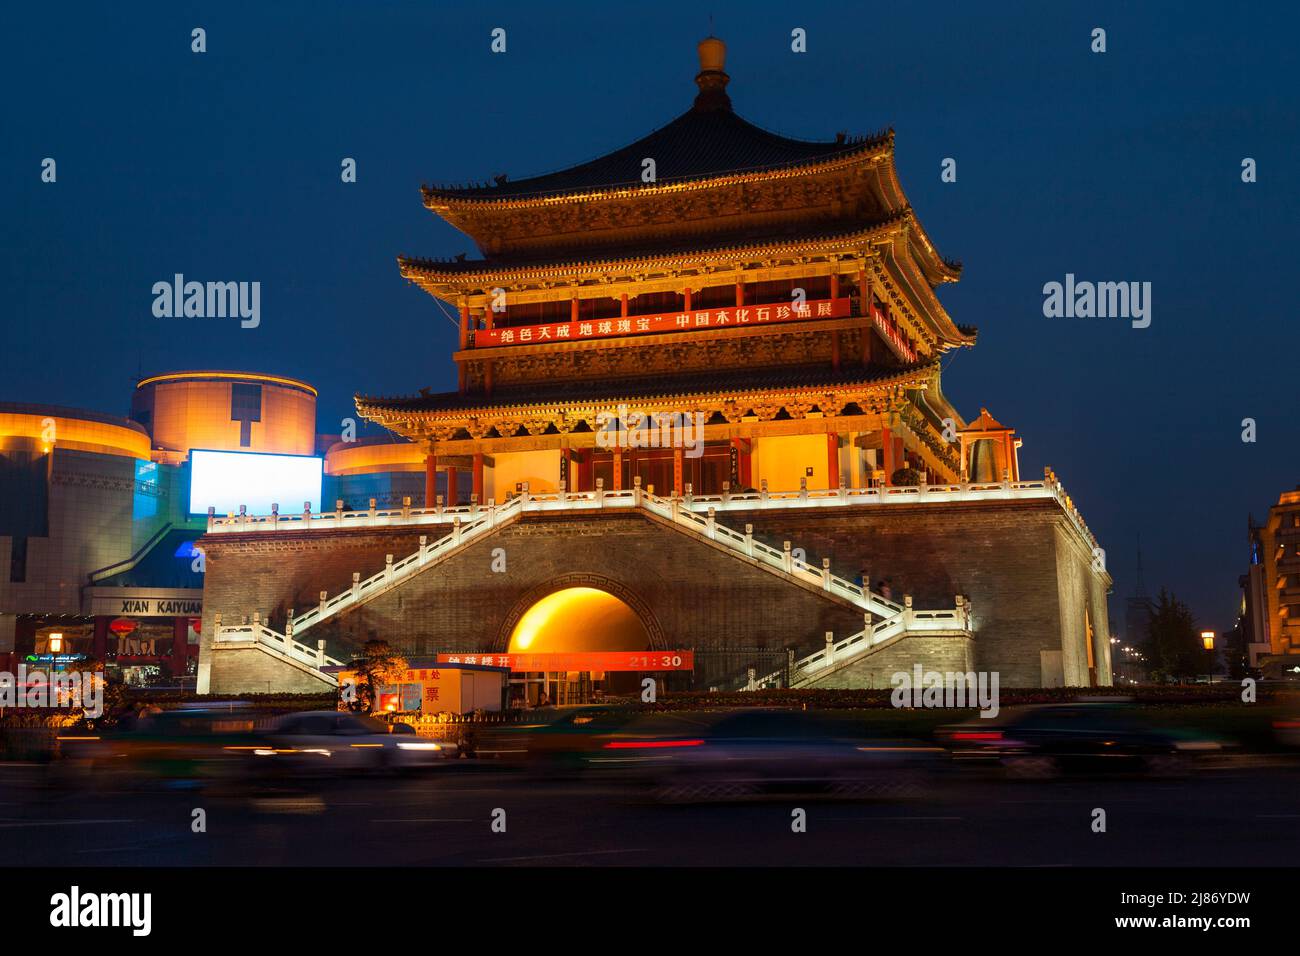 Glockenturm von Xi'an in der Nacht; außen vor dem historischen chinesischen Gebäude, das die Glocke beherbergt, die den Beginn des Tages und andere wichtige Zeiten in der alten Stadt Klang. China. (125) Stockfoto